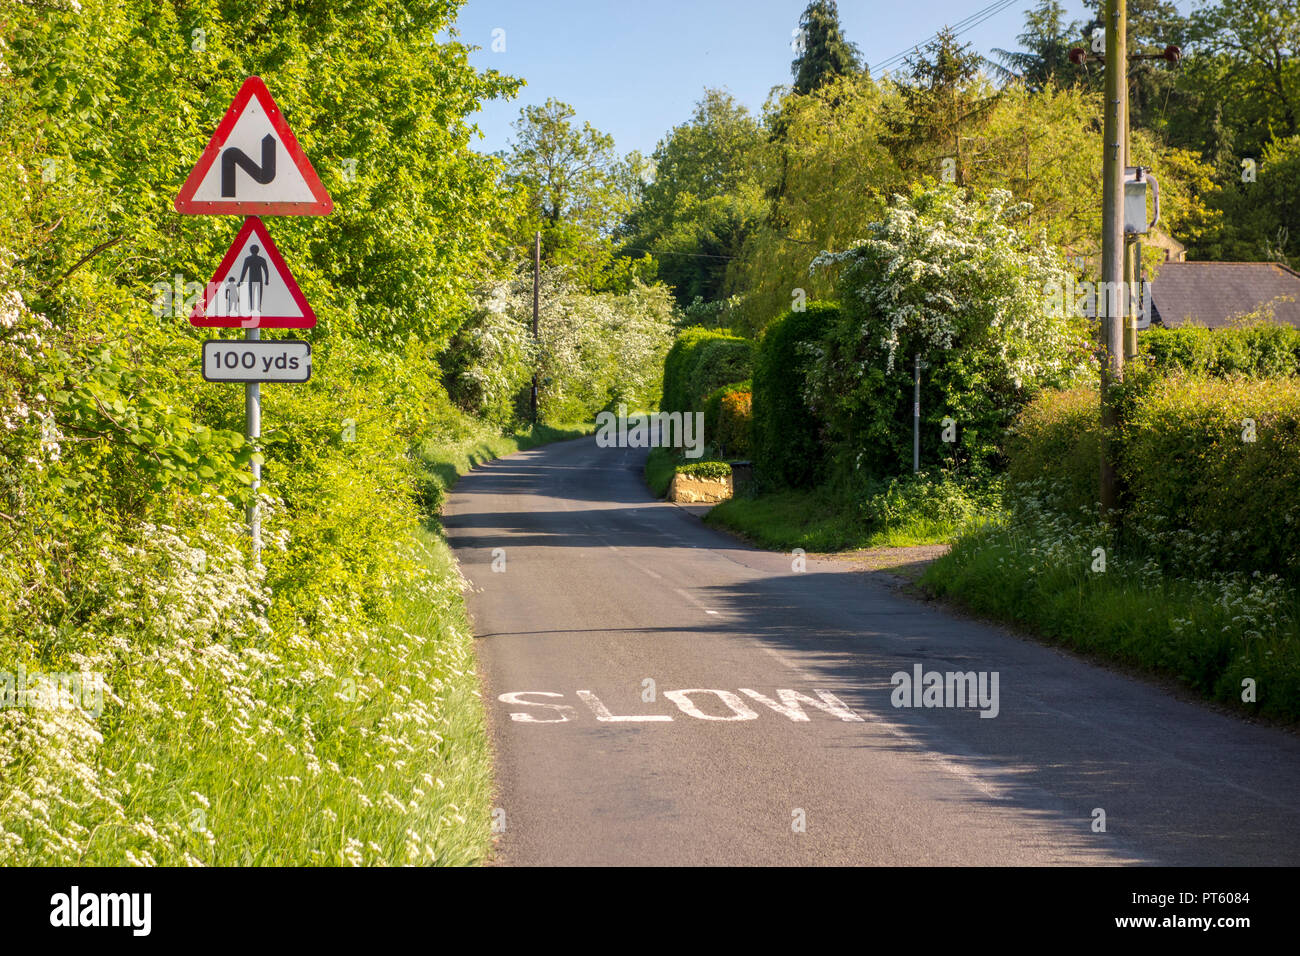 Warndreieck Verkehrsschilder für Fußgänger mit langsamen Kurven und Zeichen auf einem Britischen country lane, Sharpenhoe, Großbritannien Stockfoto